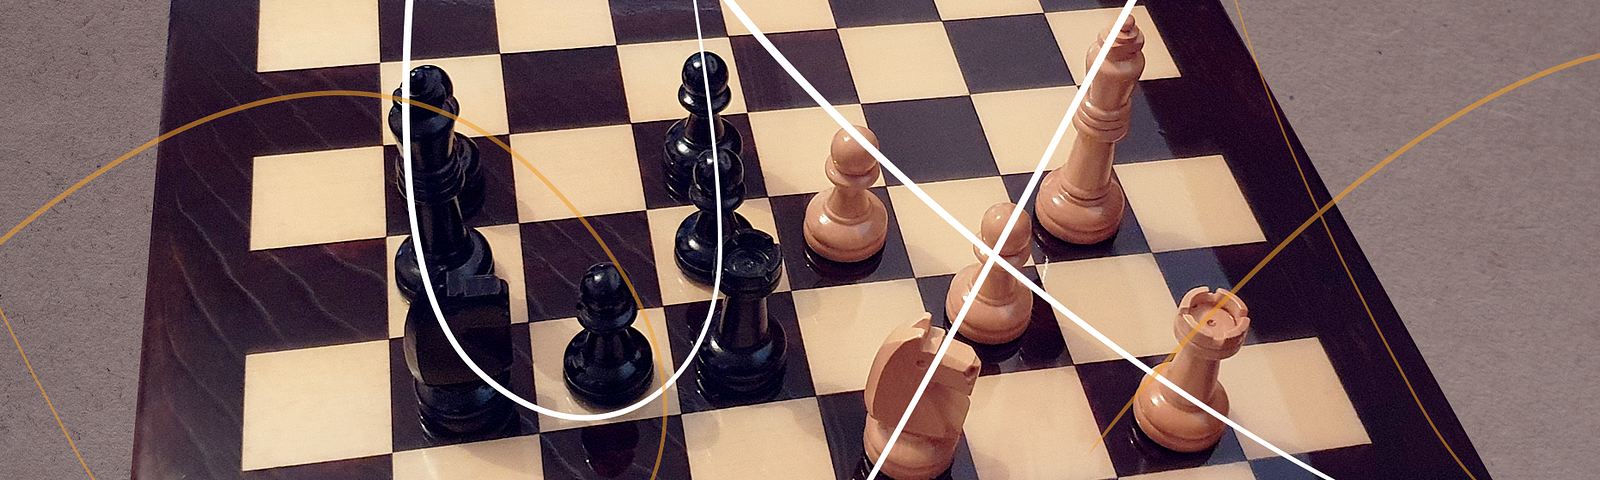 Imagem de xadrex